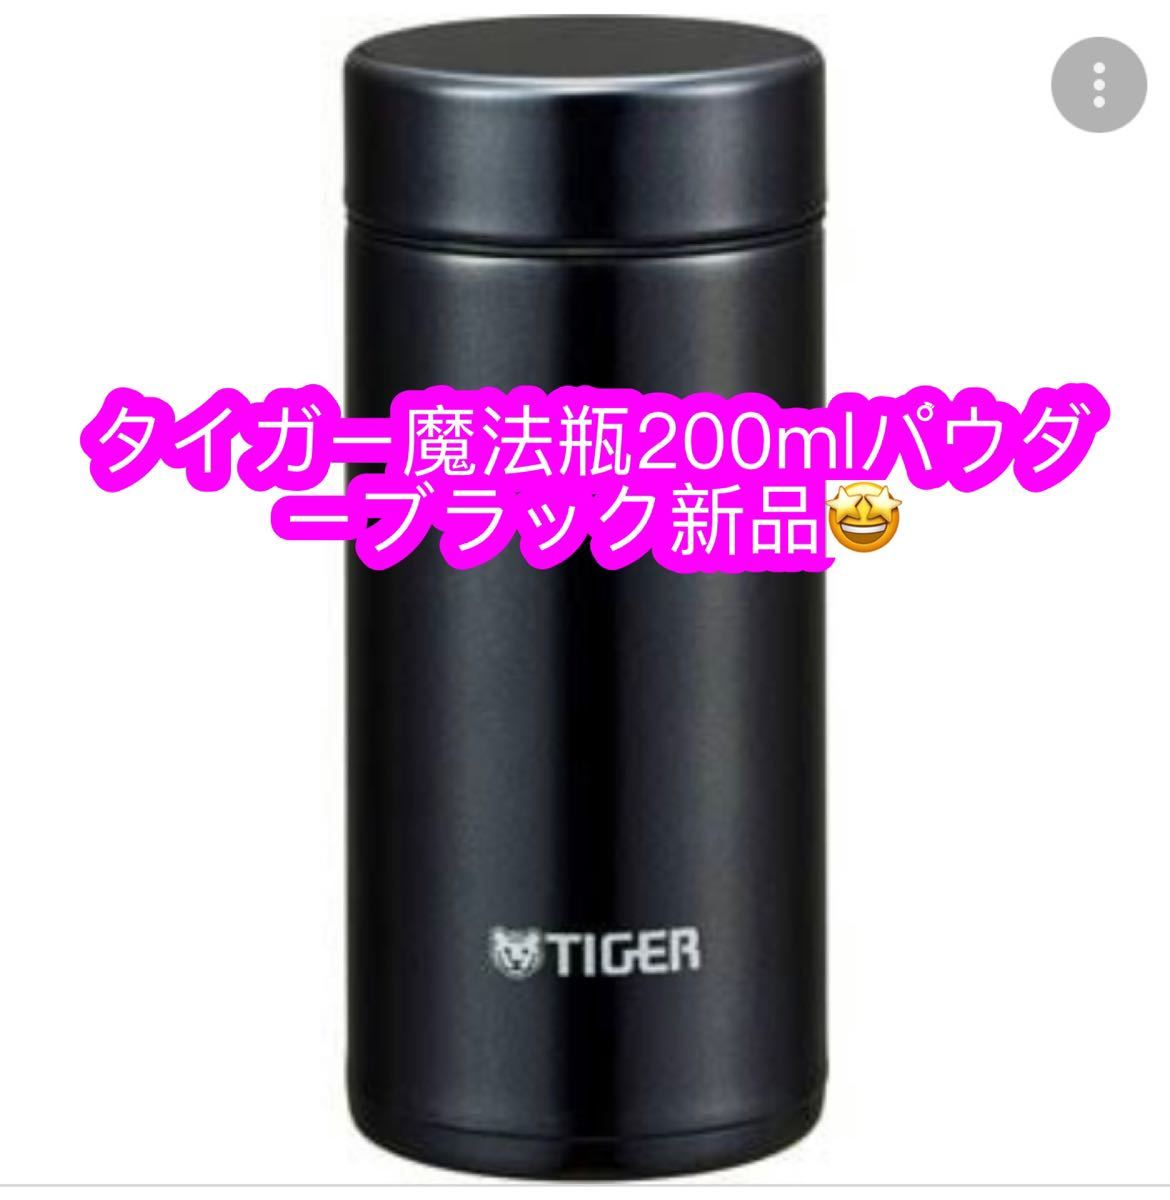 タイガー魔法瓶 200ml★ブラック 新品♪